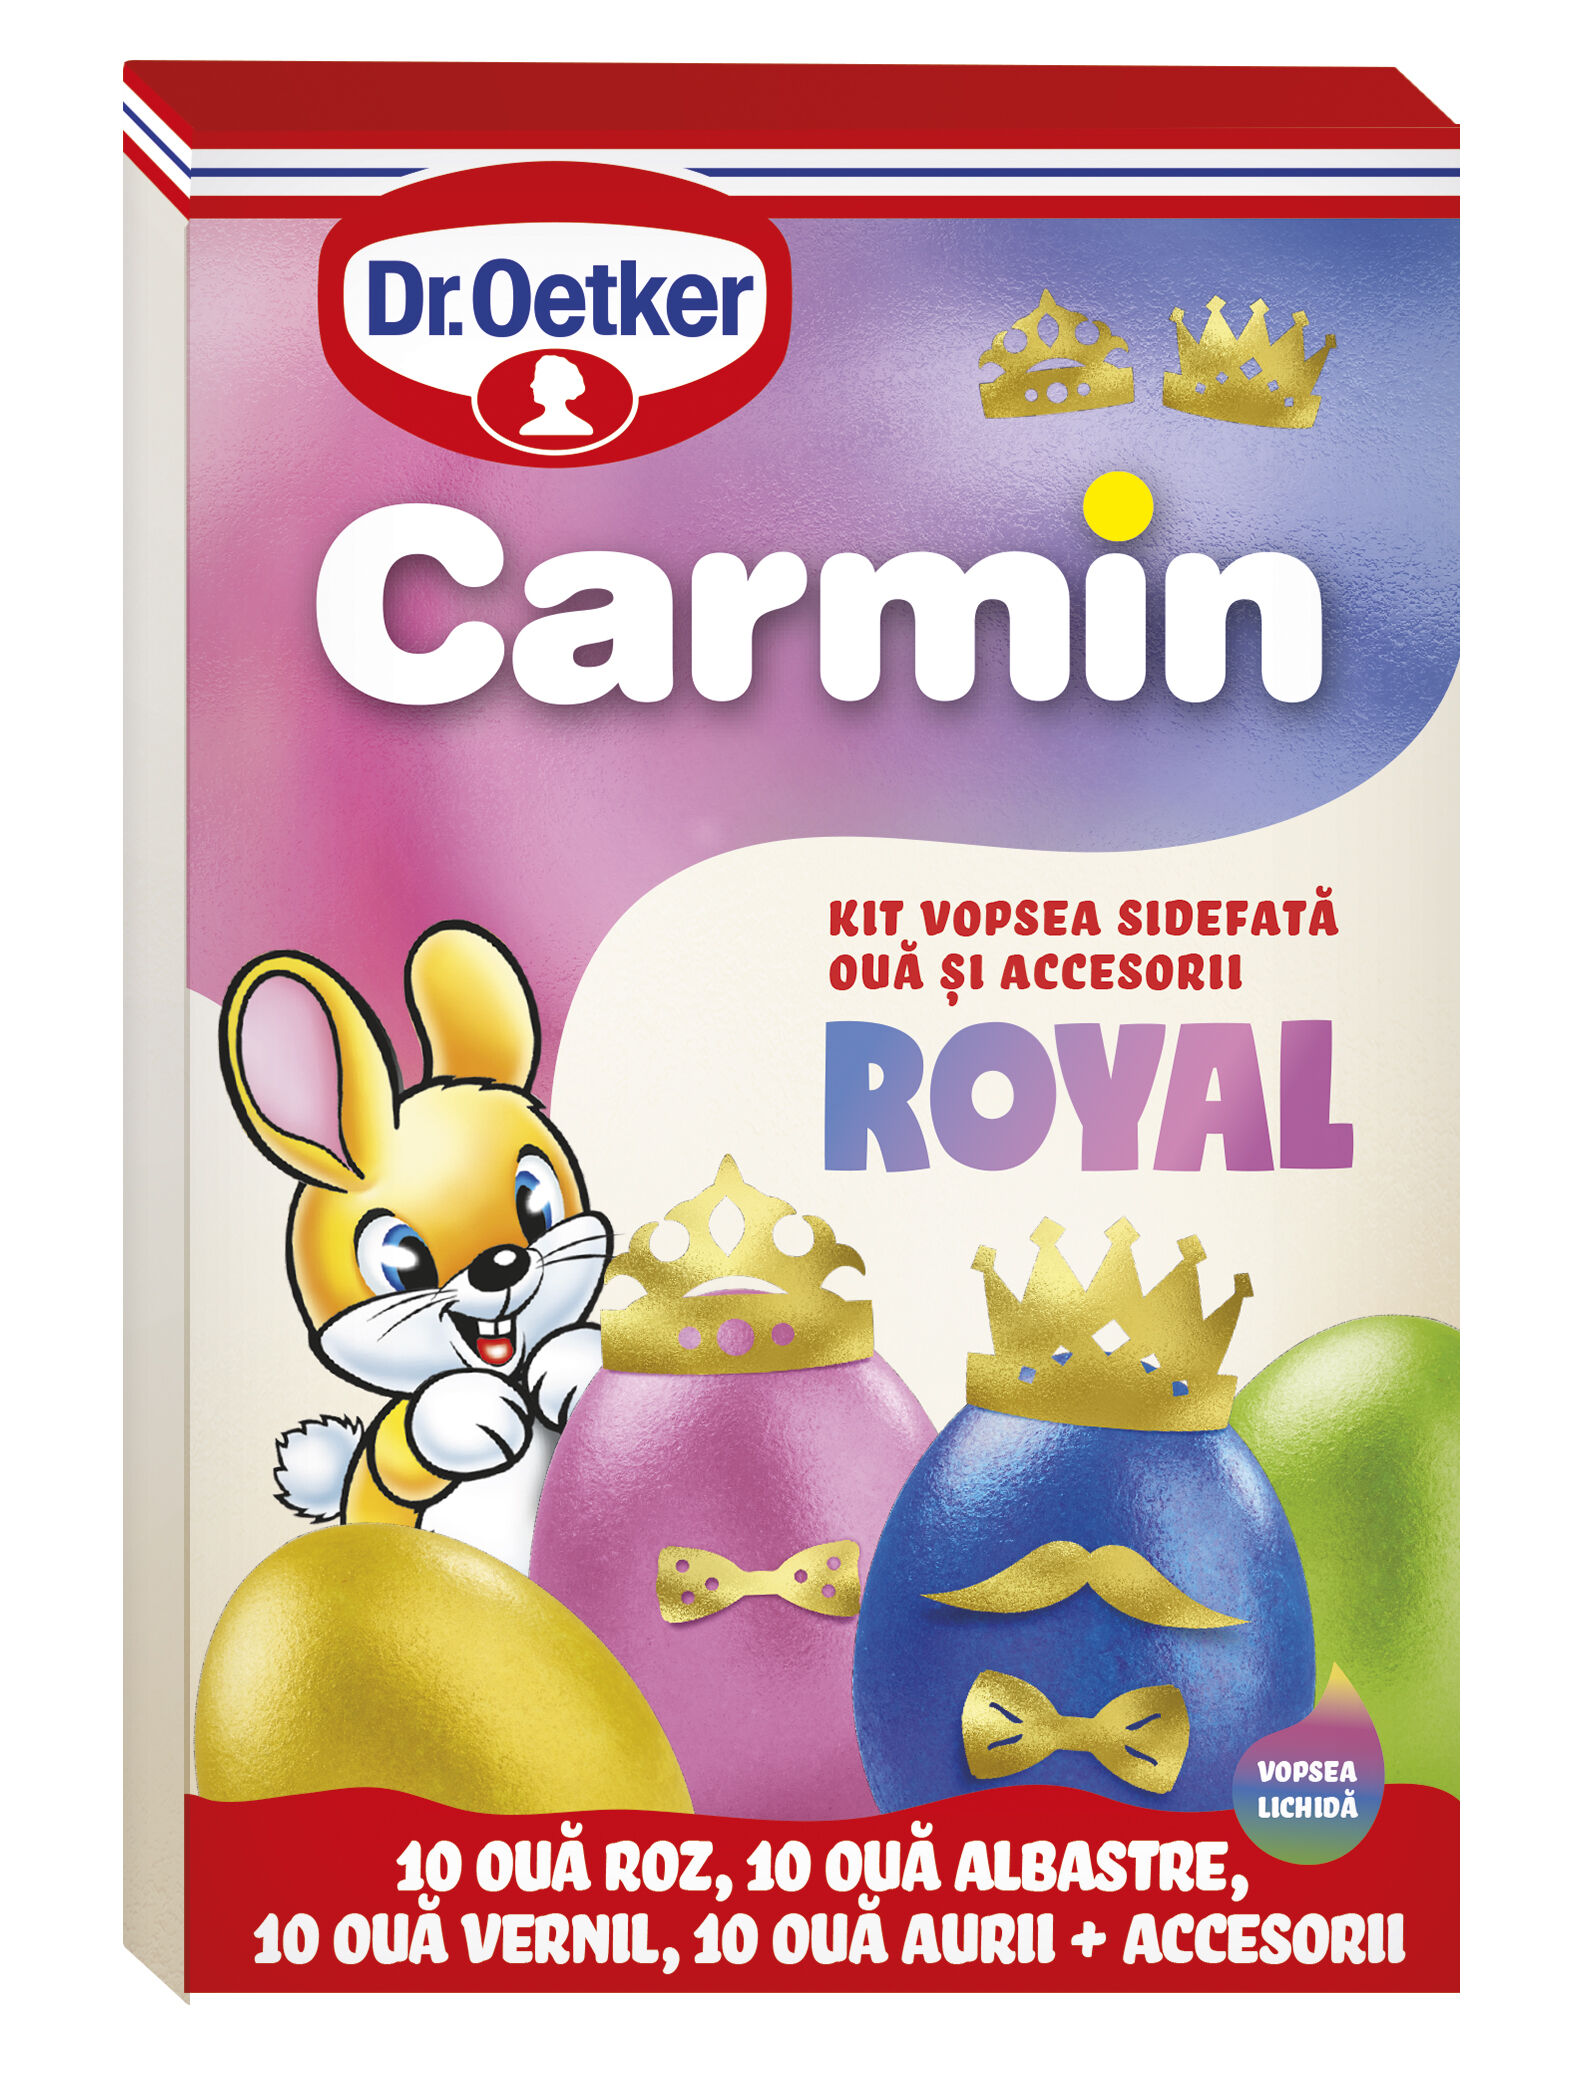 Vopsea lichida kit royal Carmin pentru 40 oua